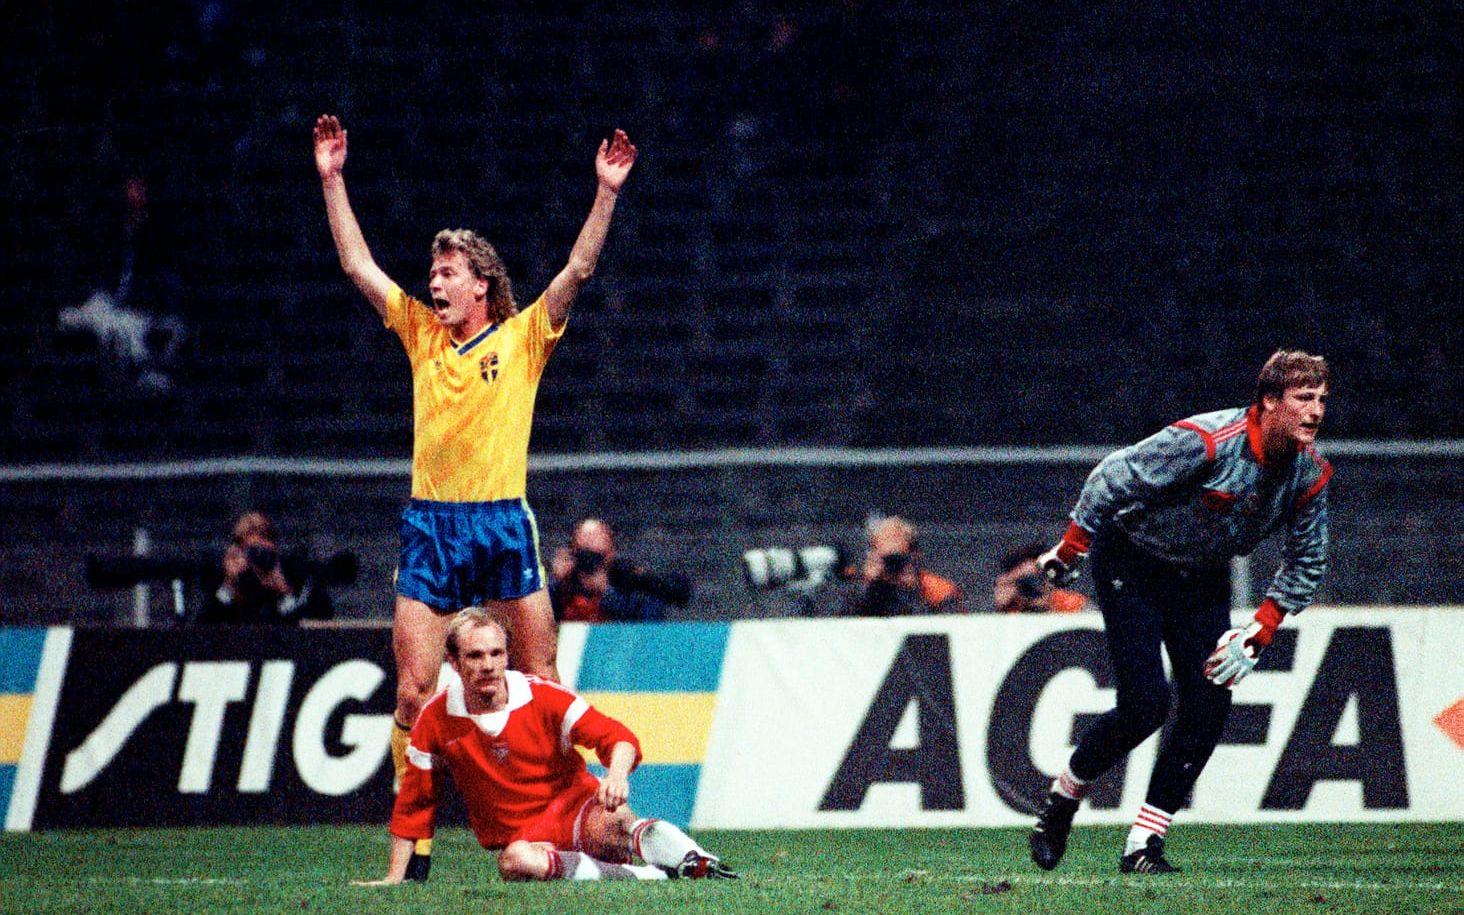 Sverige hade inte spelat ett mästerskap sedan VM 1978 och inför bortamatchen mot Polen fanns chansen, vid seger var en plats i VM 1990 säkrad. Johnny Ekström hade extra bråttom när han efter en blixtsnabb kontring satte dit 2-0-målet som avgjorde matchen och skickade Sverige till ett efterlängtat mästerskap. Foto: Bildbyrån